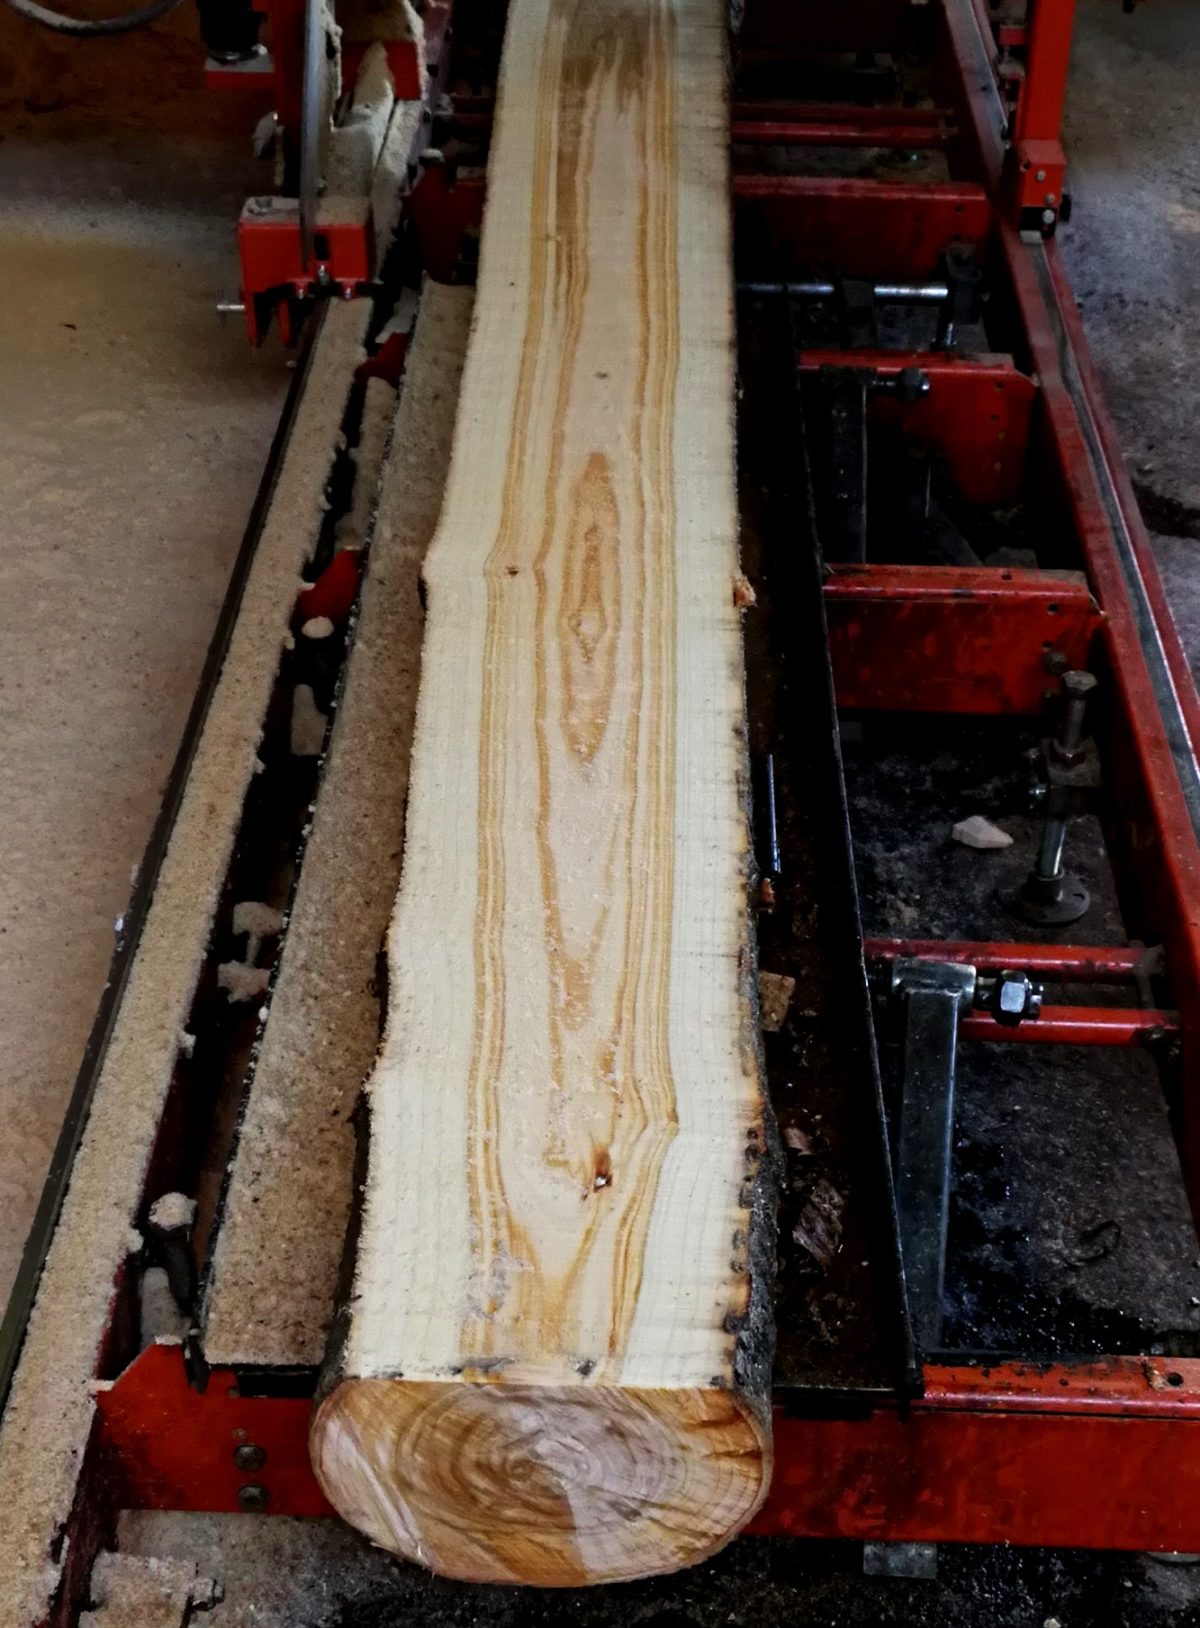 Tablas madera con cantos naturales Woodna: Maderas Naturales